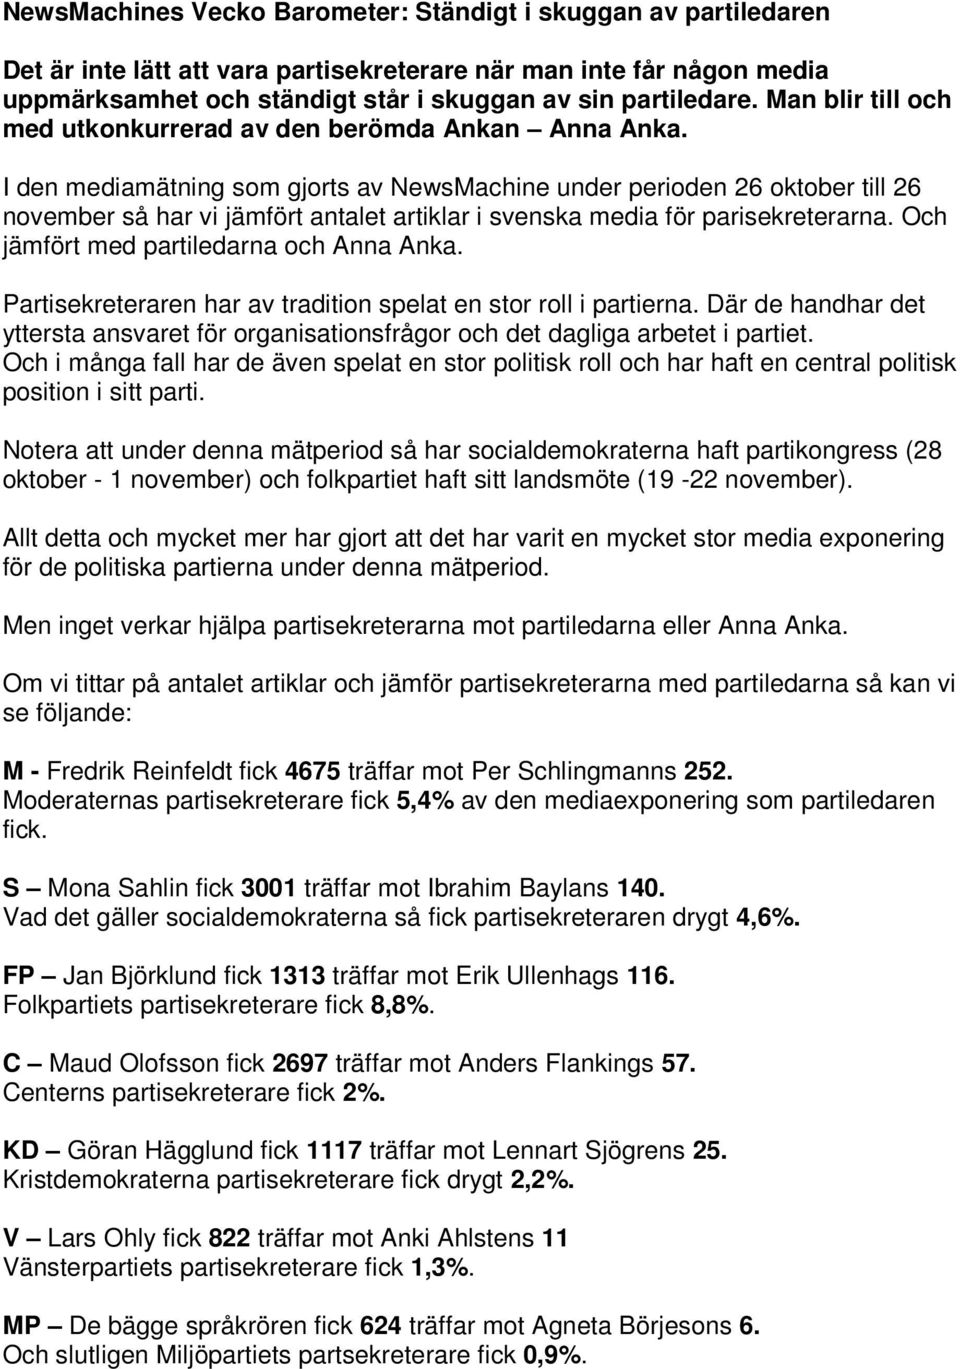 I den mediamätning som gjorts av NewsMachine under perioden 26 oktober till 26 november så har vi jämfört antalet artiklar i svenska media för parisekreterarna.